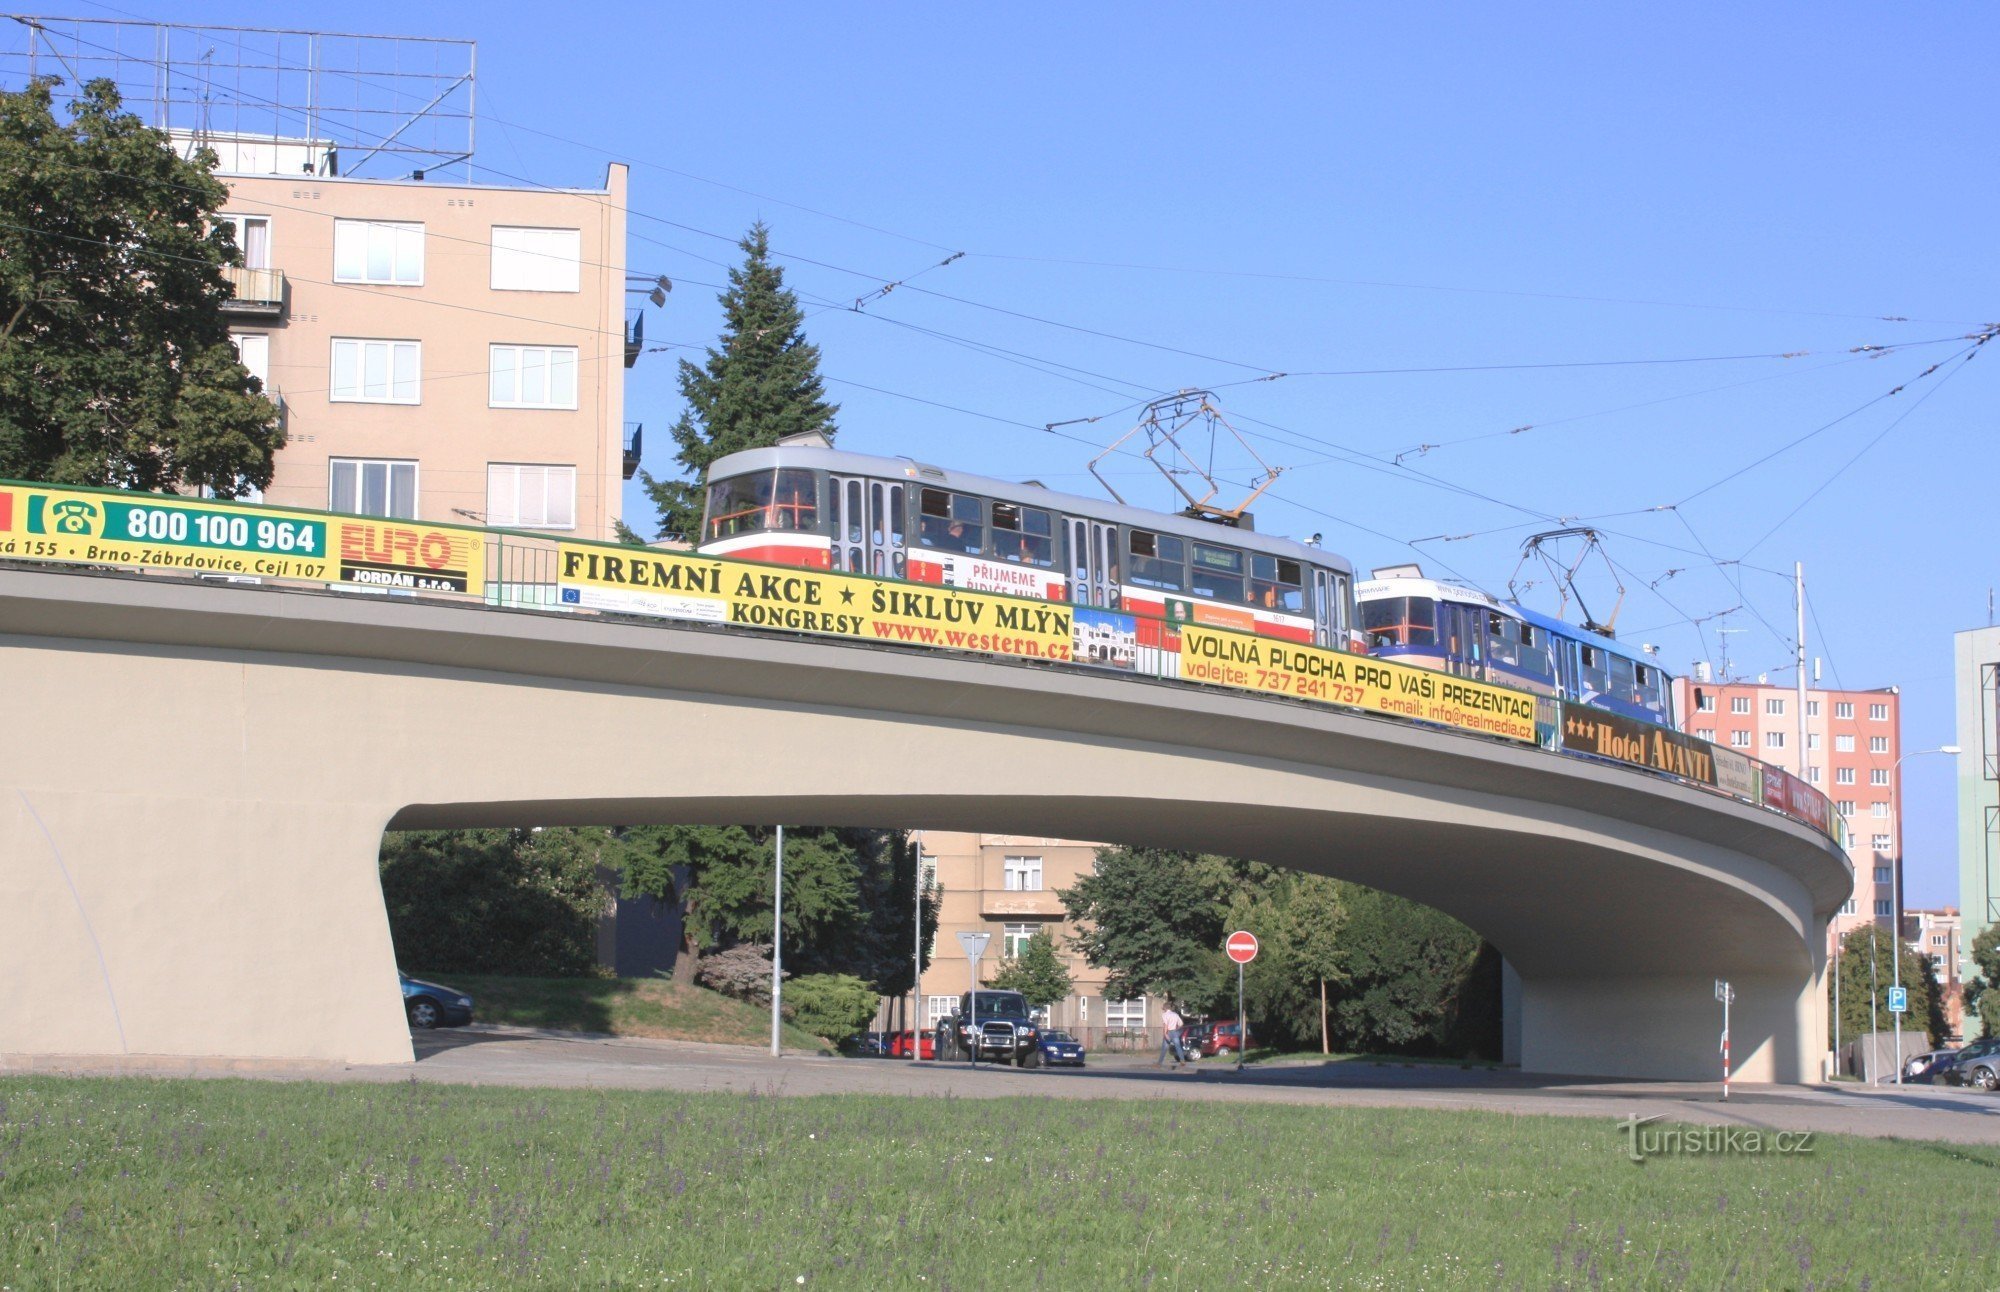 Brno-Pisárky - pod de tramvai